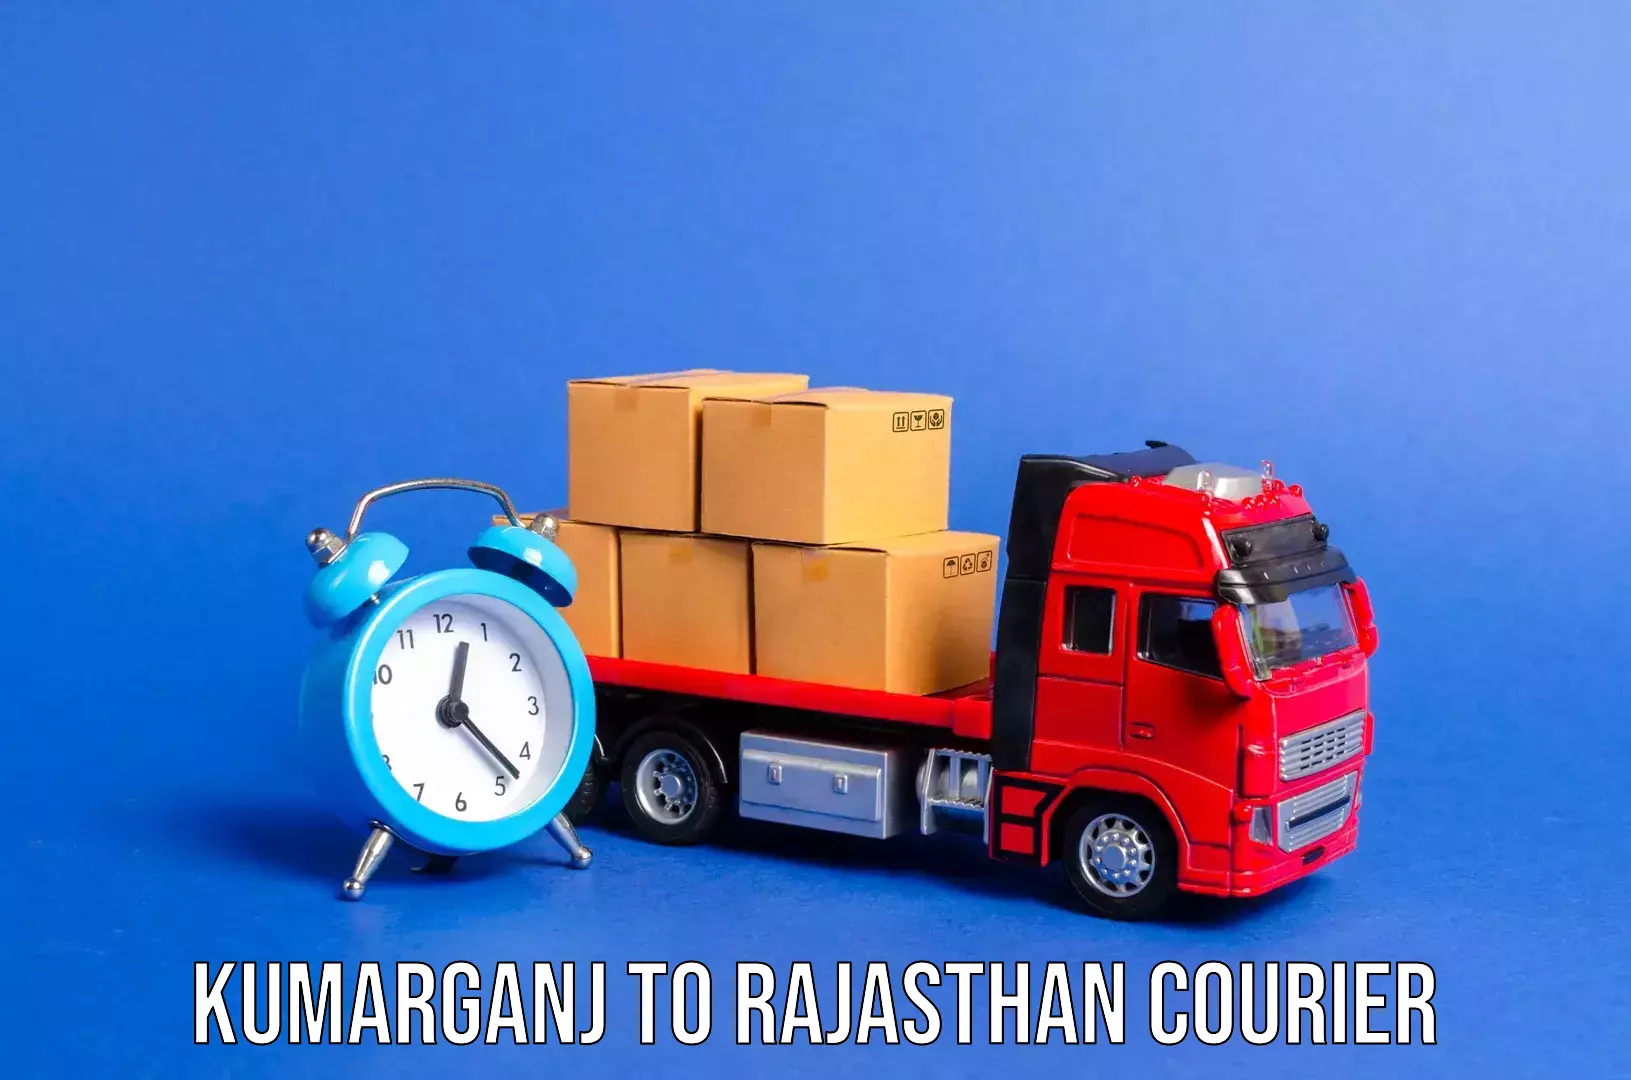 Luggage transfer service Kumarganj to Rajasthan